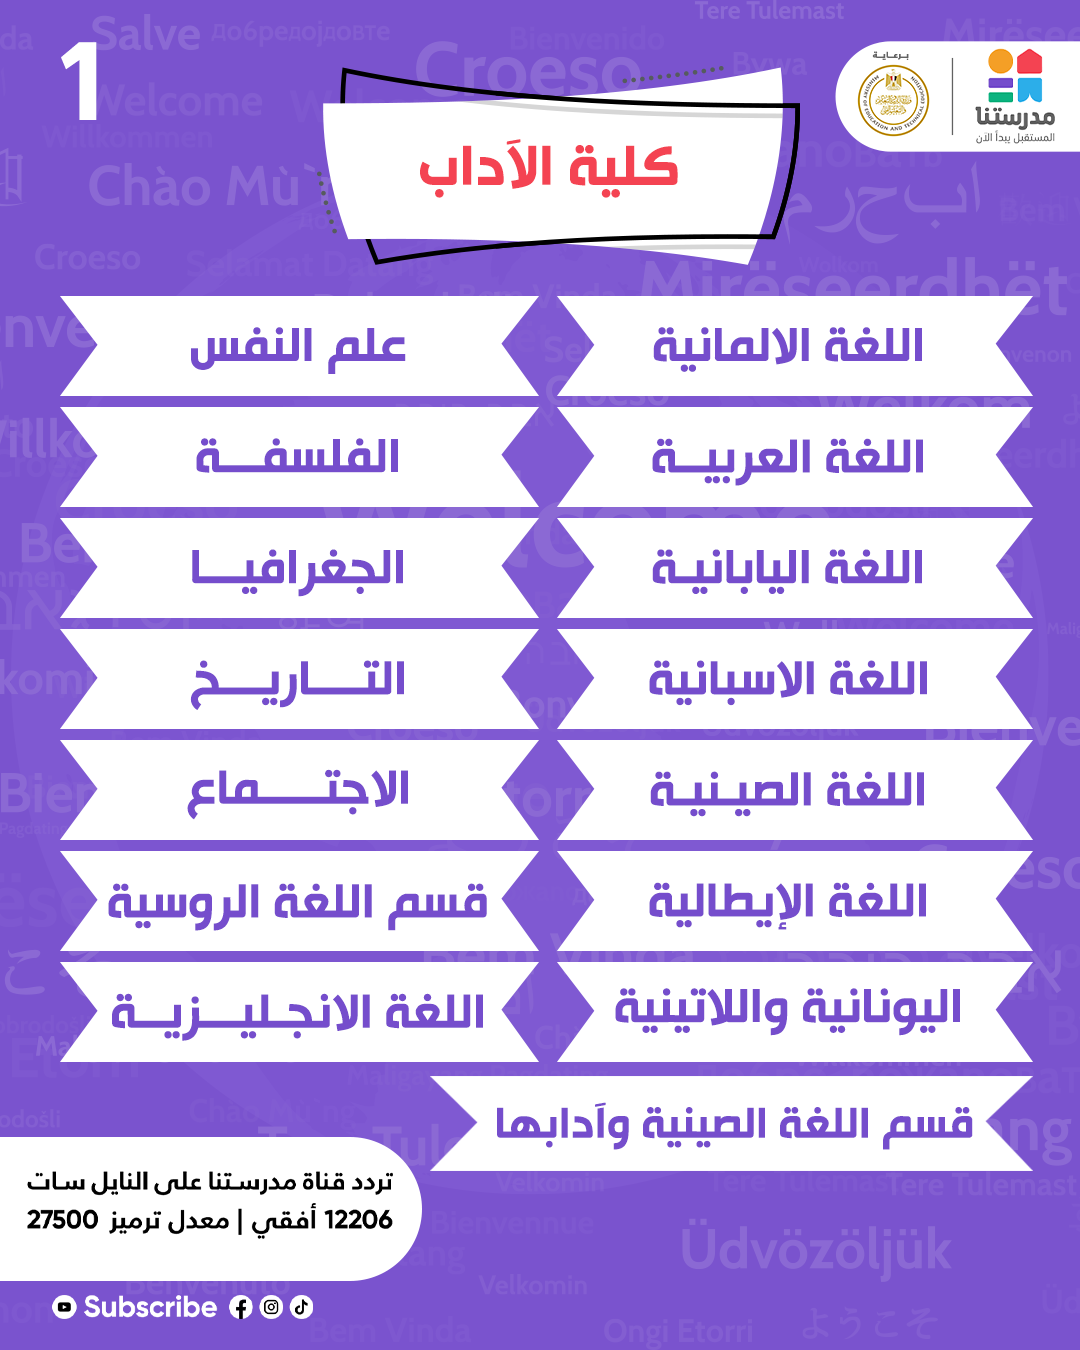 هندسة كلية جامعة University Education learning Social media post university project كليات مصر كلية الطب